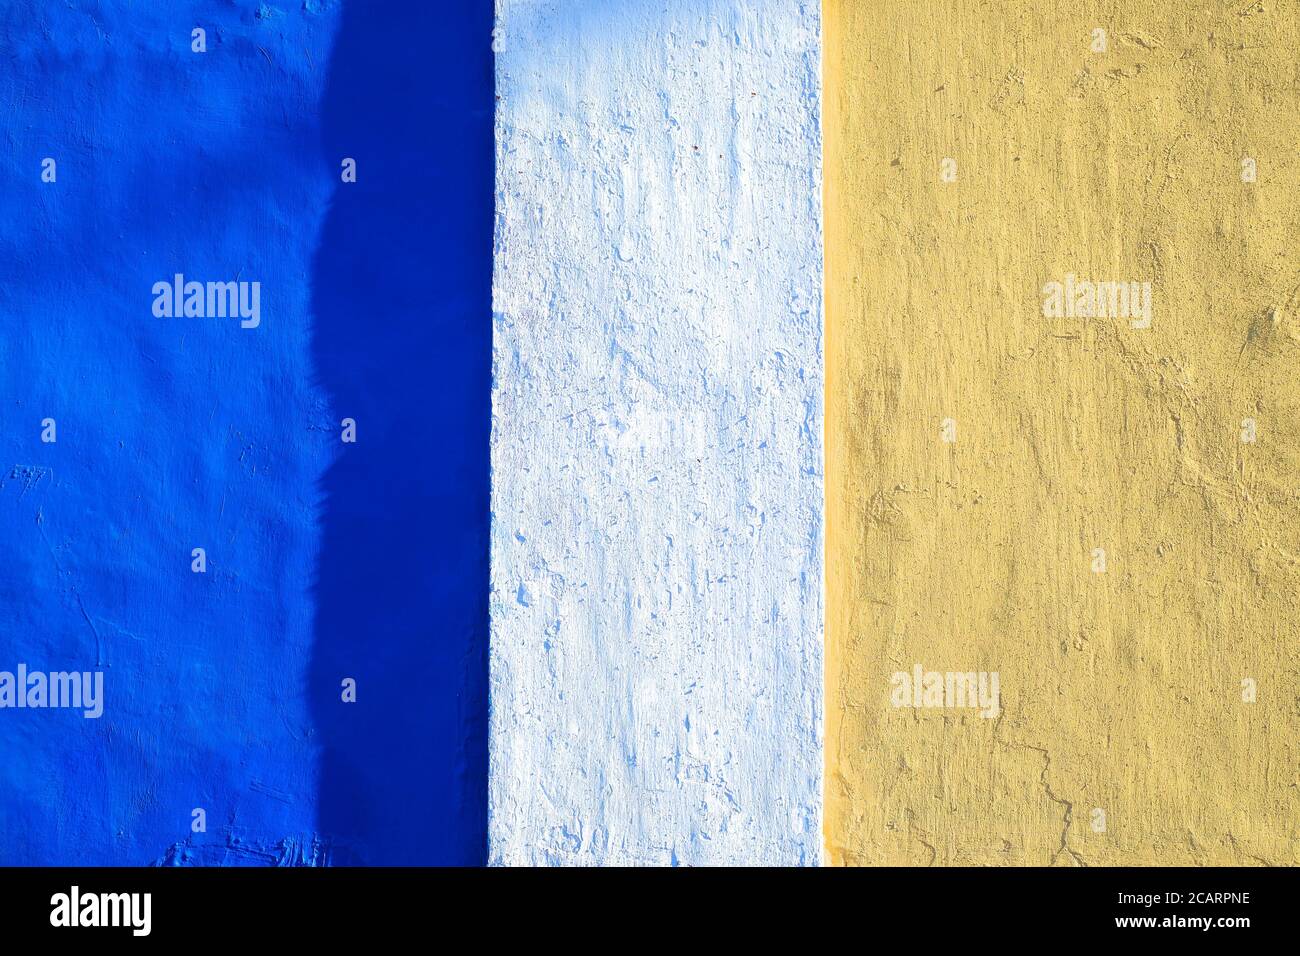 Bande di colori vivaci: Blu e arancione chiaro, superficie verniciata, luce dura. Foto Stock